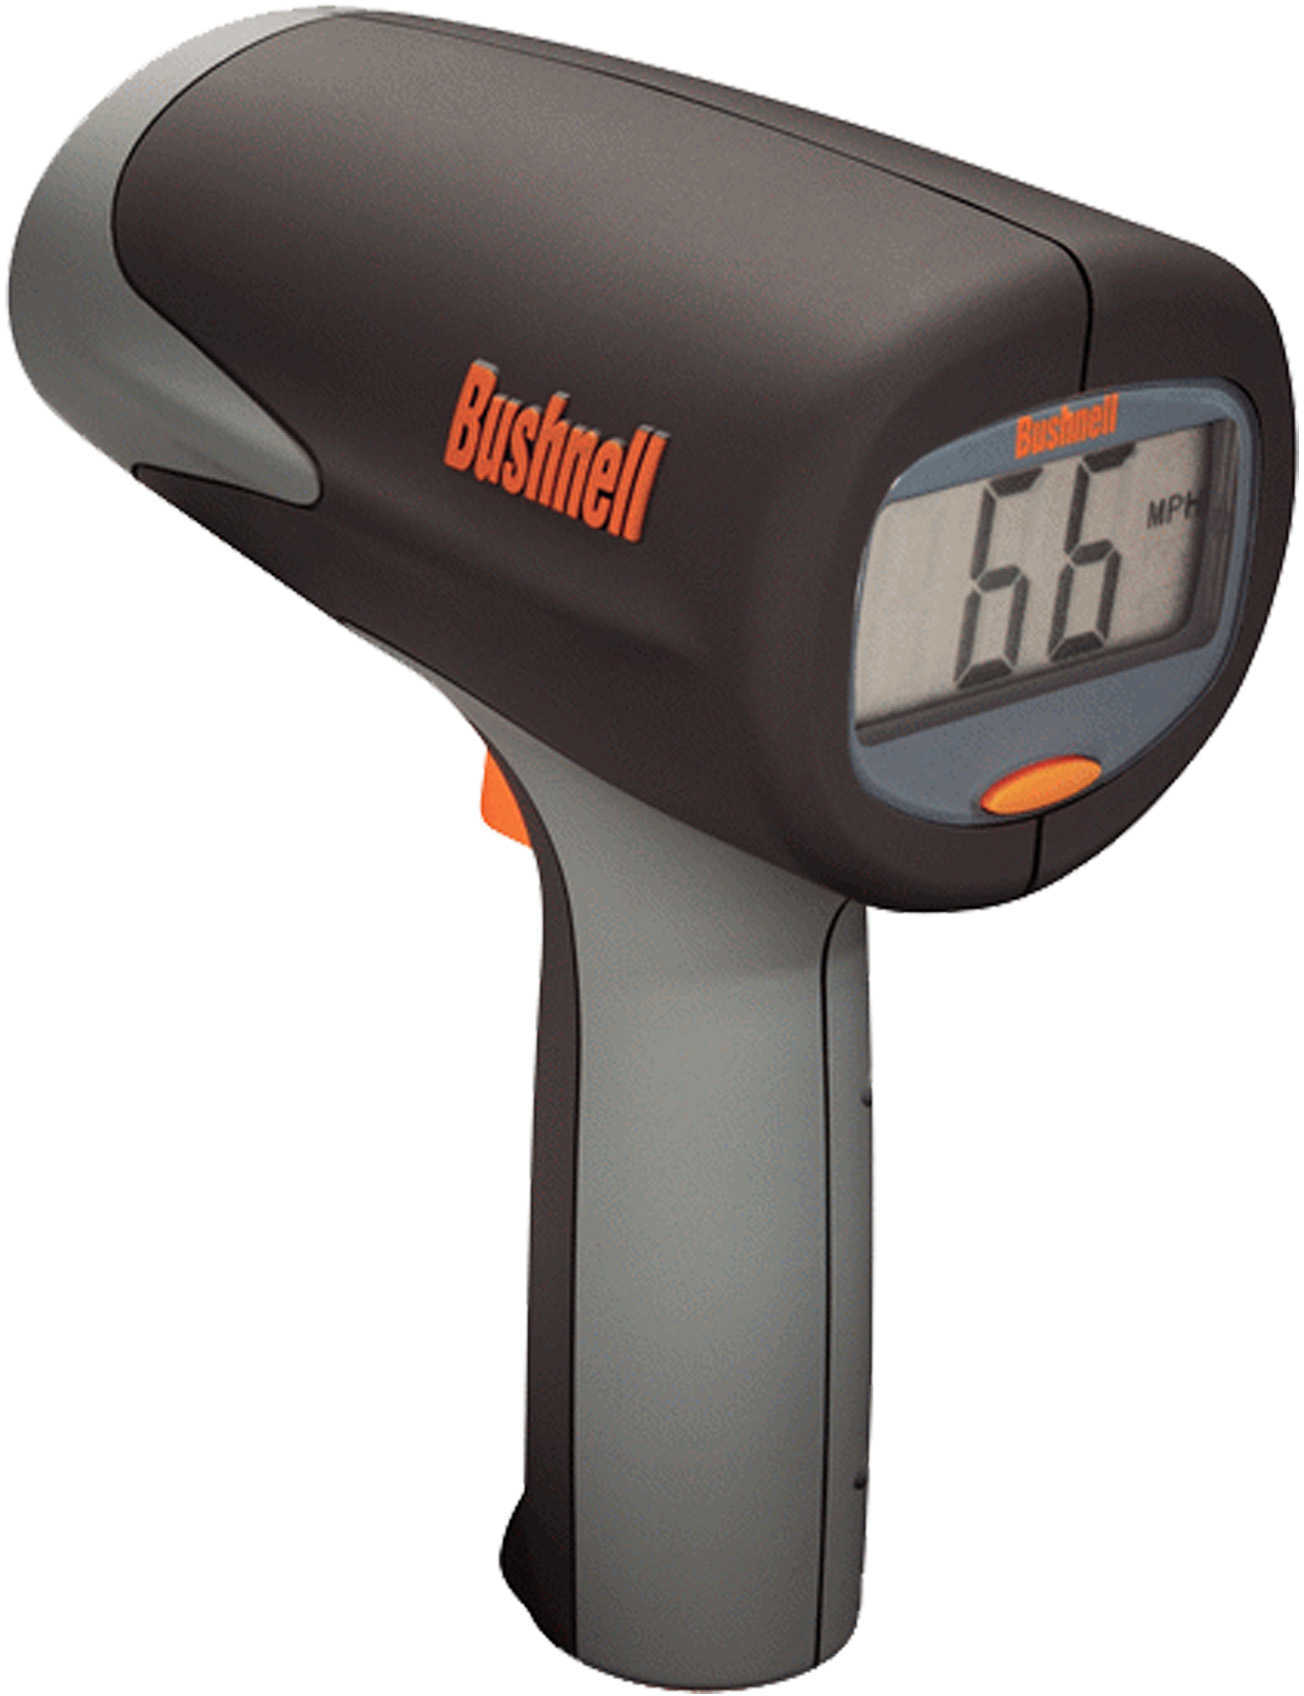 Bushnell Velocity Speed Gun 101911